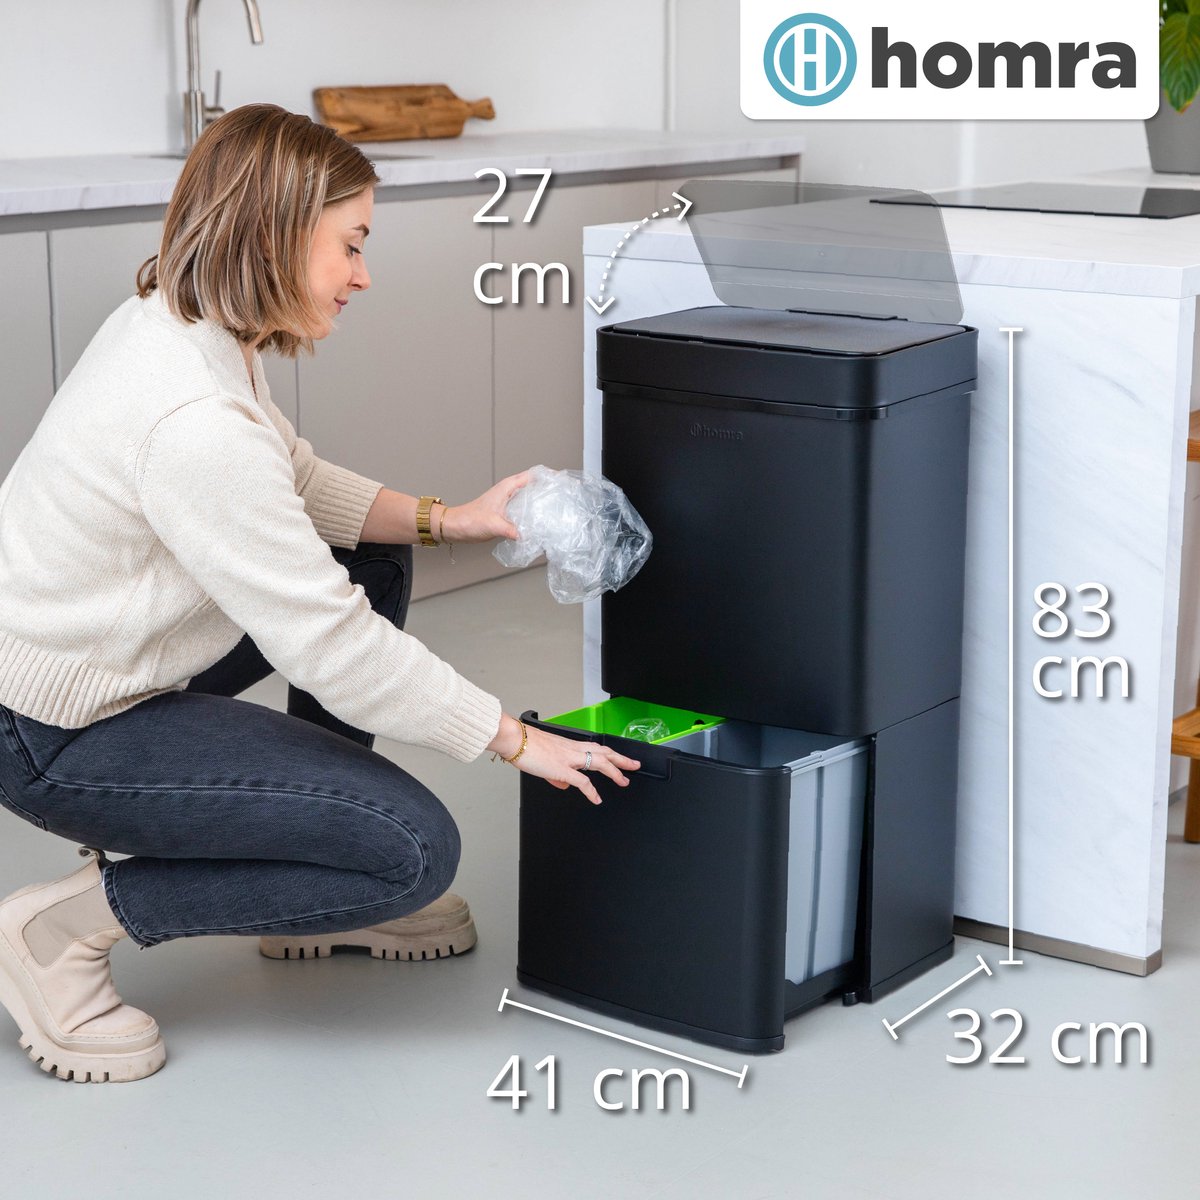 Homra Nexo - sensor trash can - 3 compartments - 72 liters (2x12 + 48 l) - Black